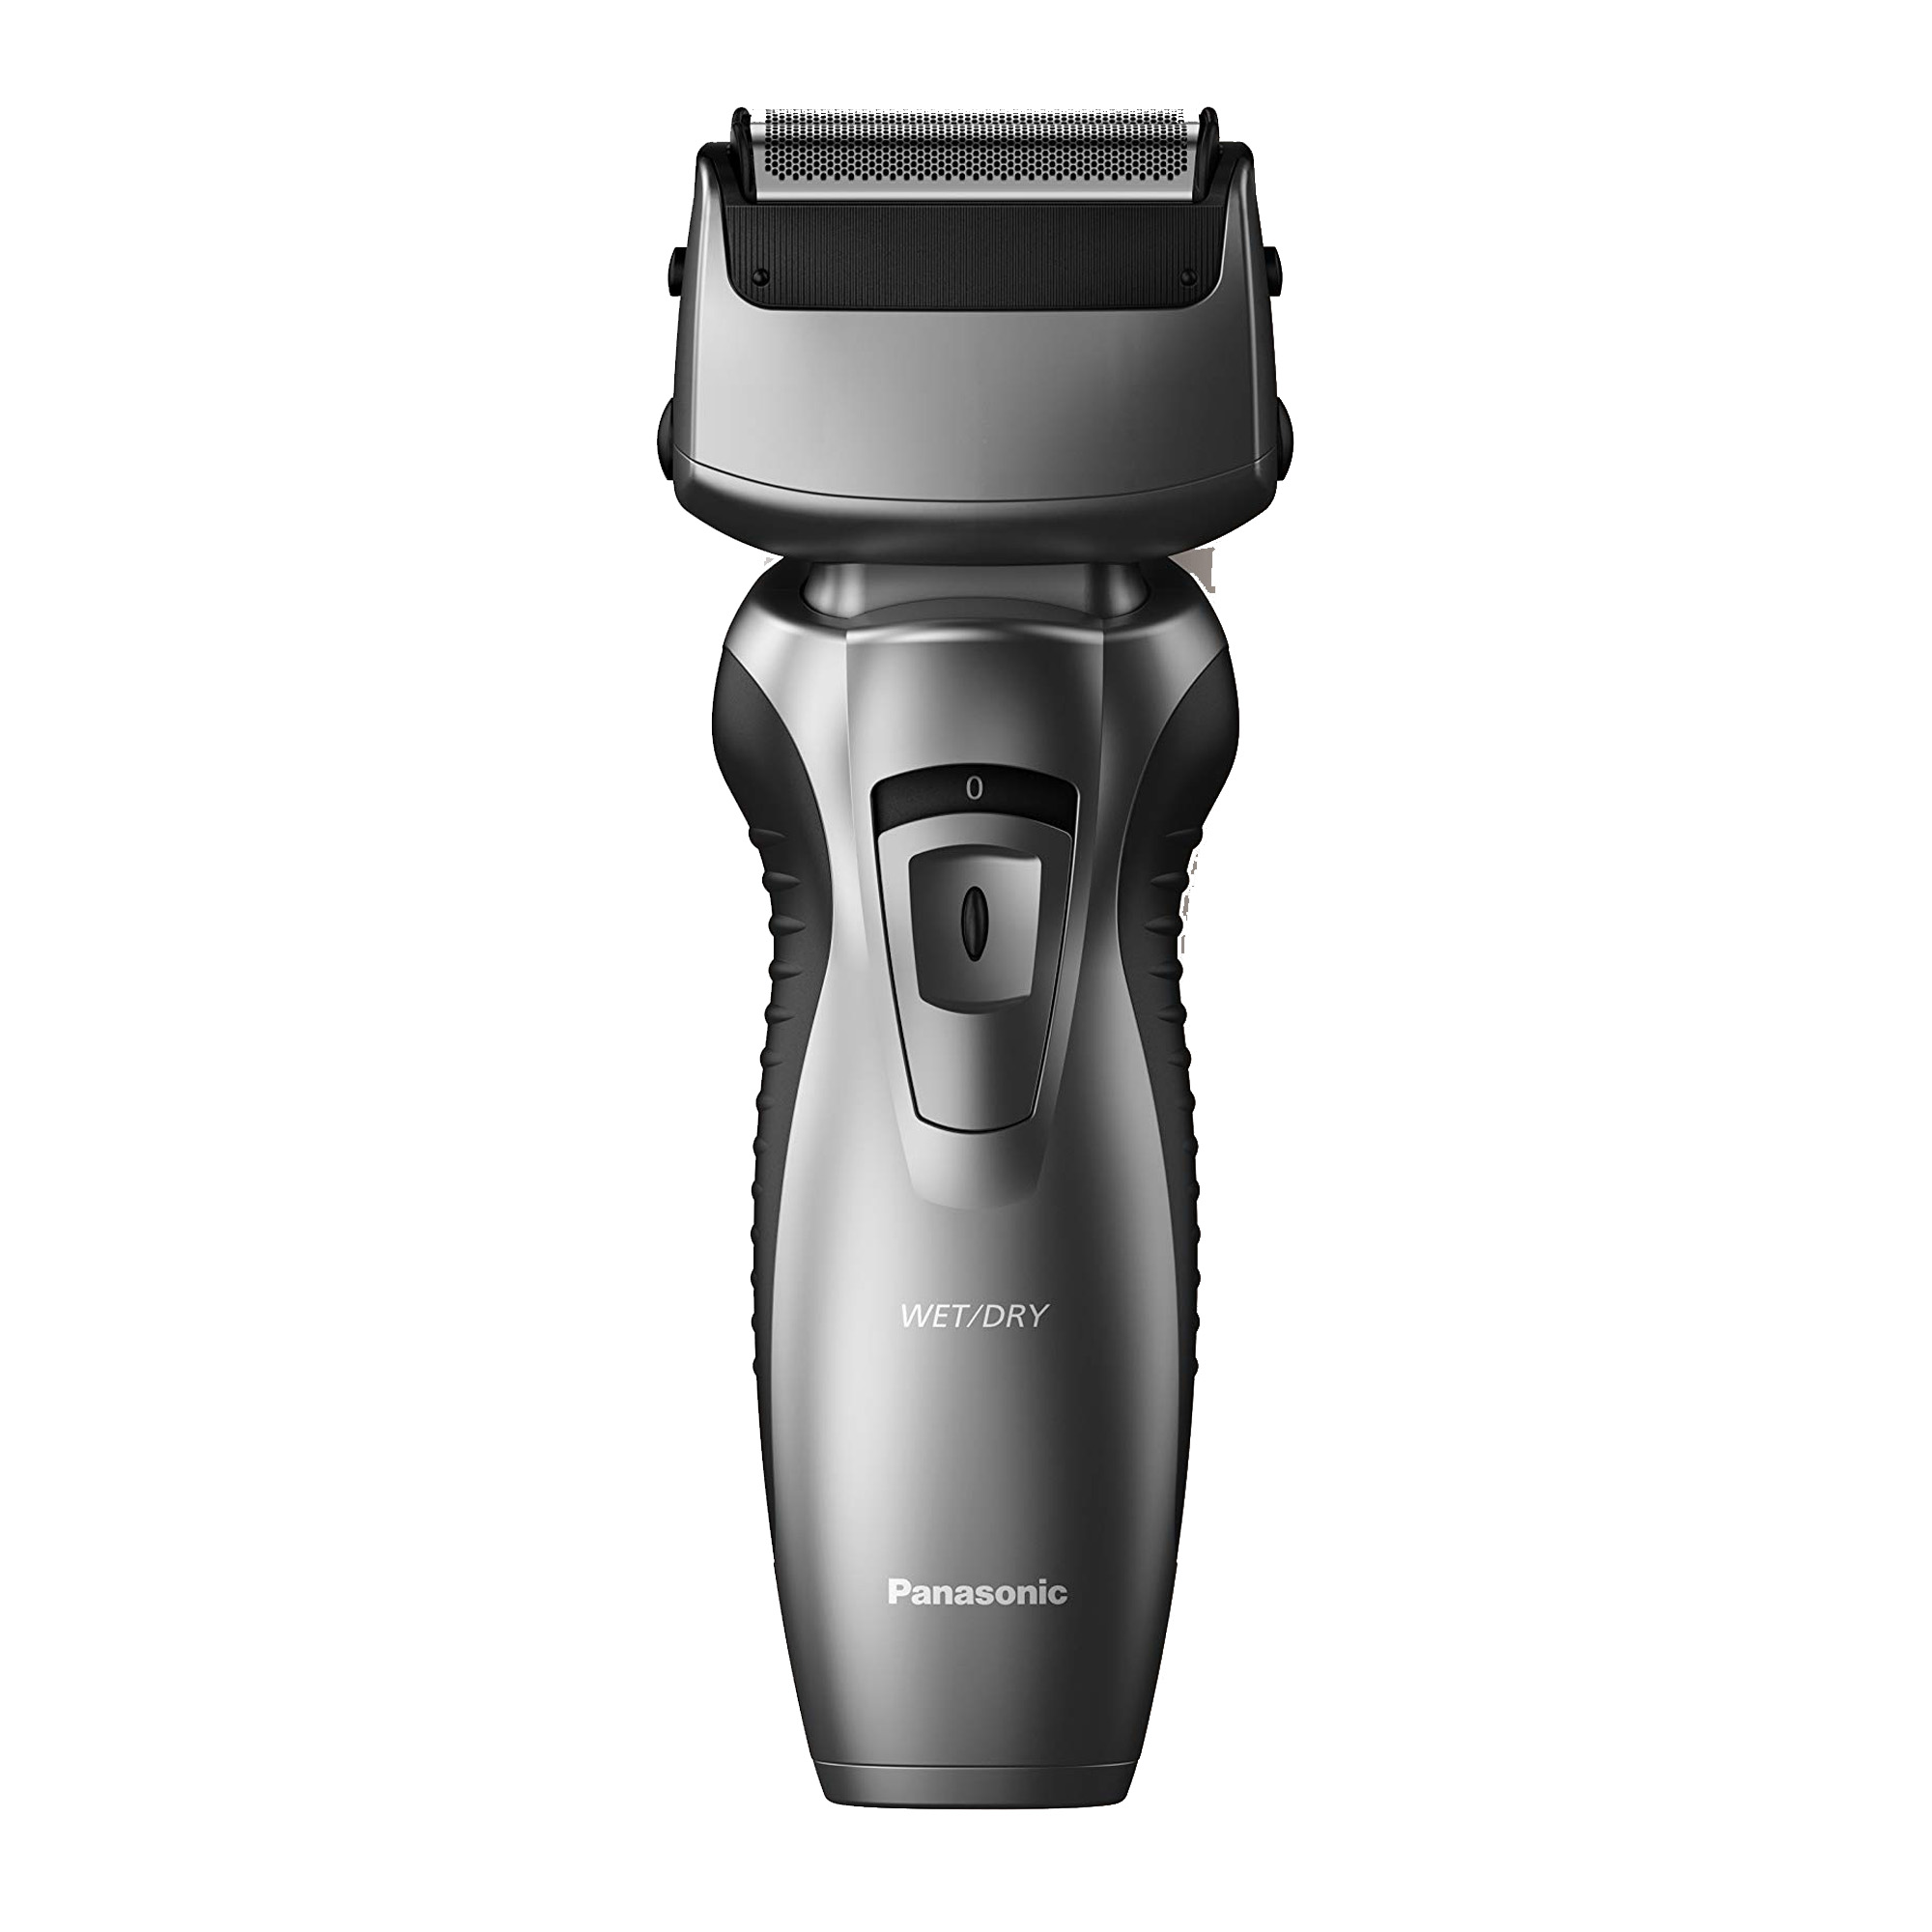 Aparat-za-brijanje-Panasonic-ES-RW33-H503